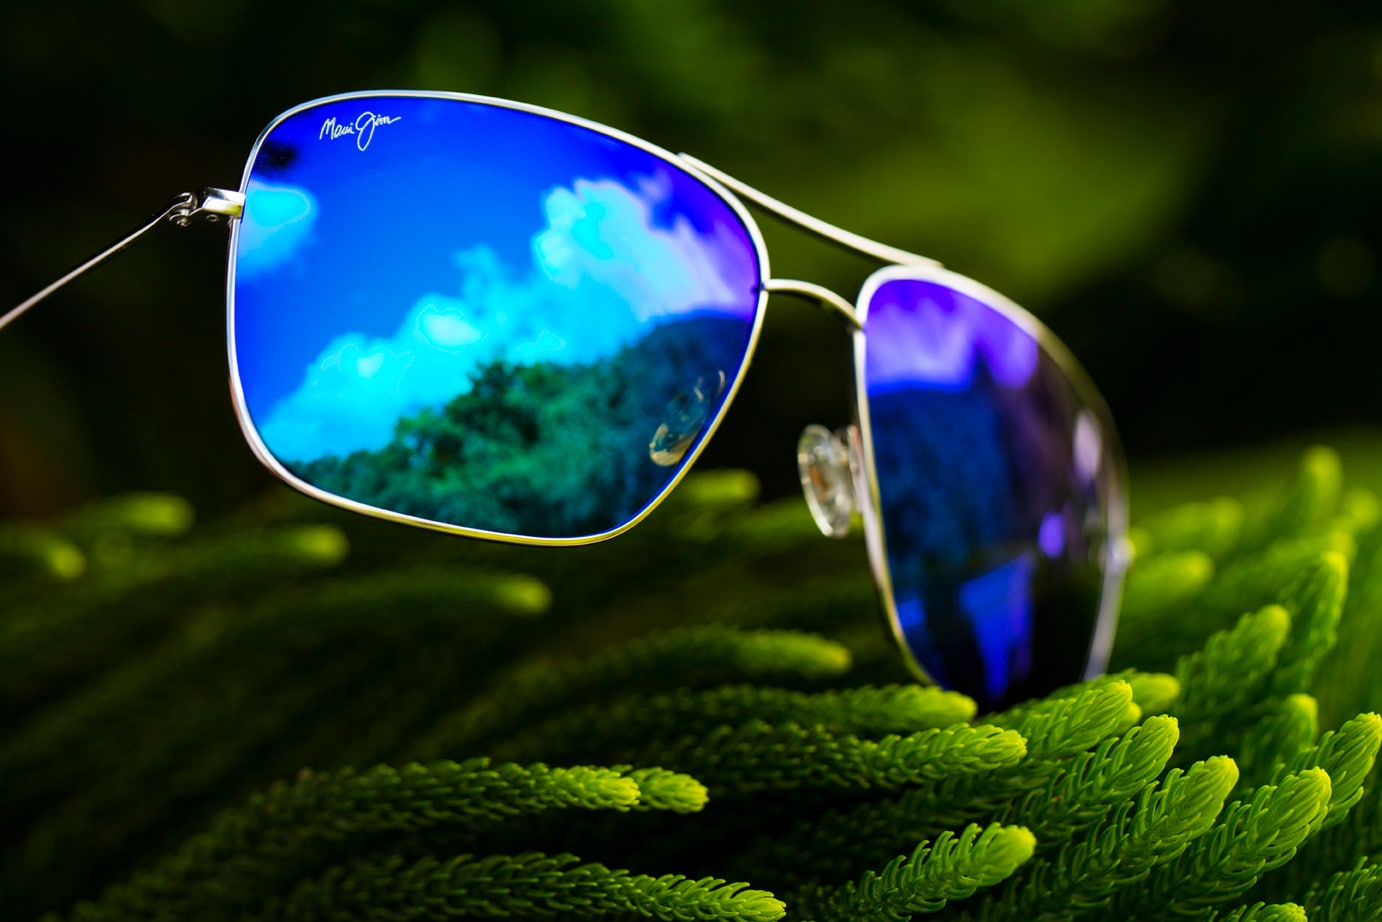 Maui Jim Gafas de sol polarizadas estilo aviador para hombre y mujer